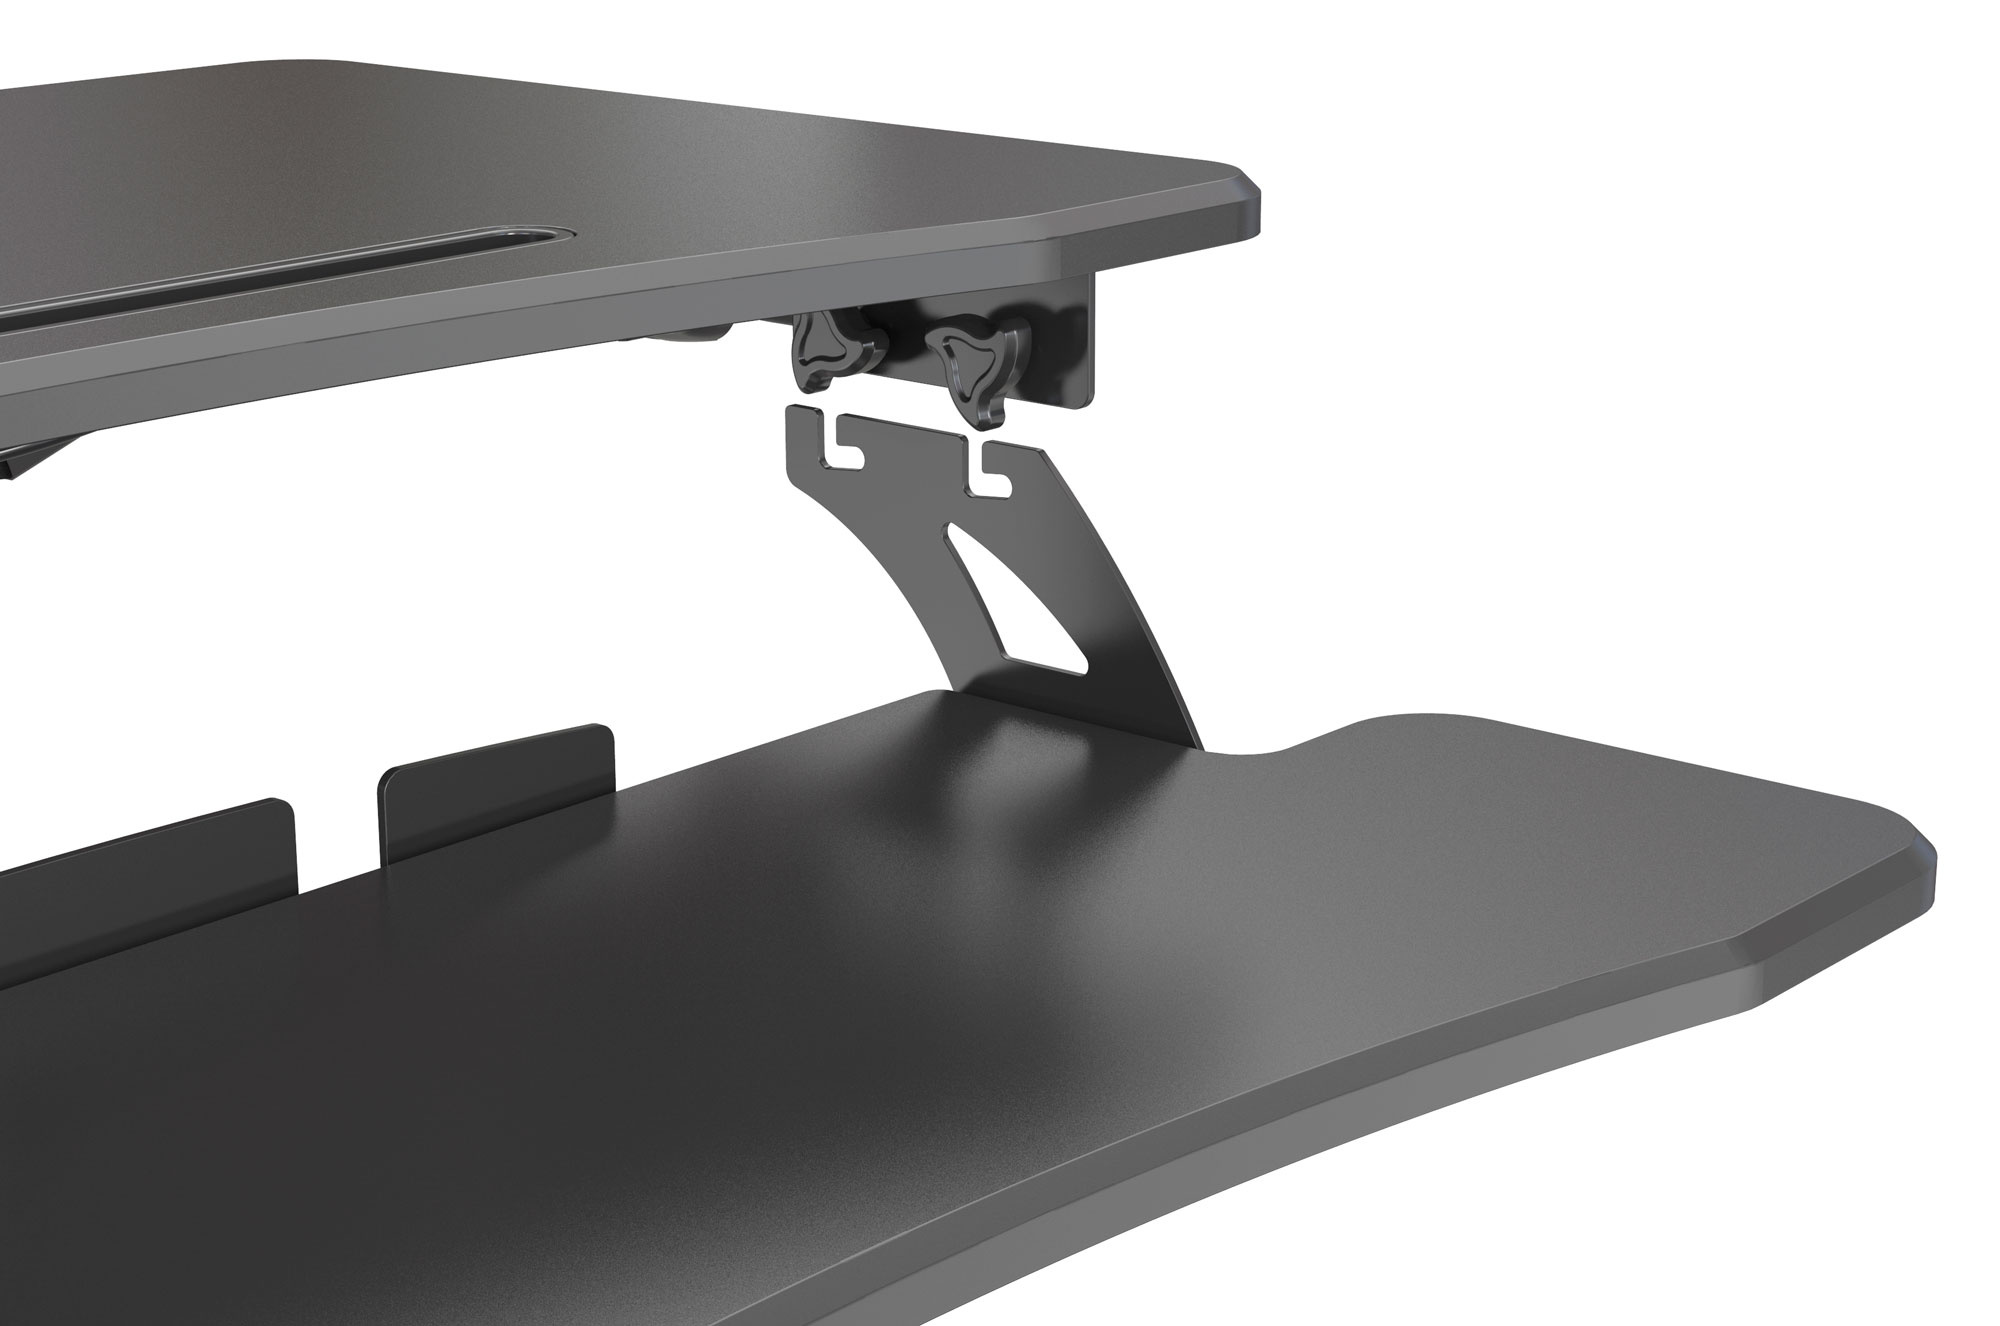 Стол для ноутбука Cactus VM-FDS108 столешница МДФ черный 71x39.2x110см (CS-FDS108BBK)